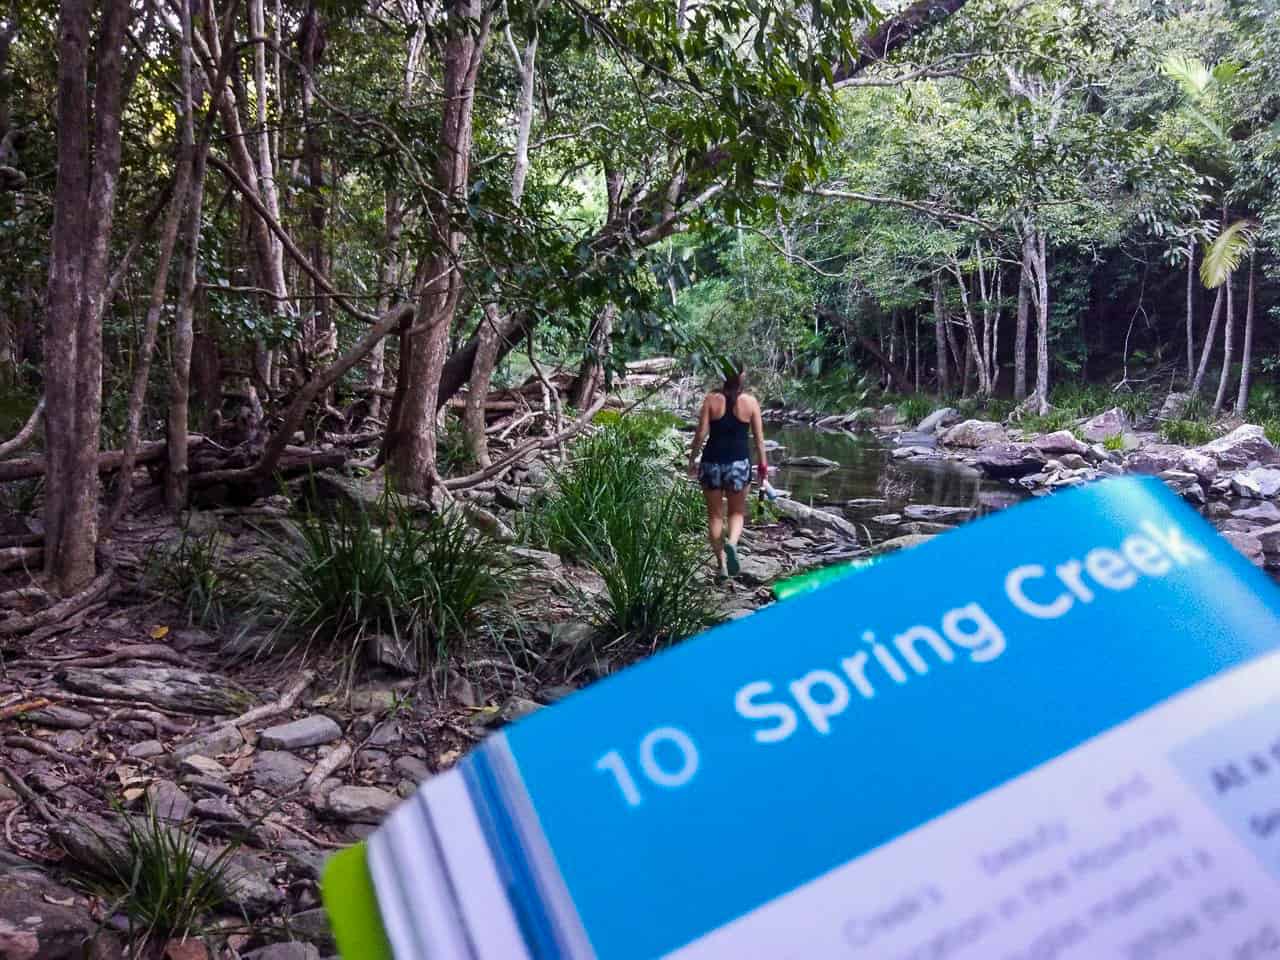 Spring Creek hiking track in Port Douglas, Queensland // Travel Mermaid